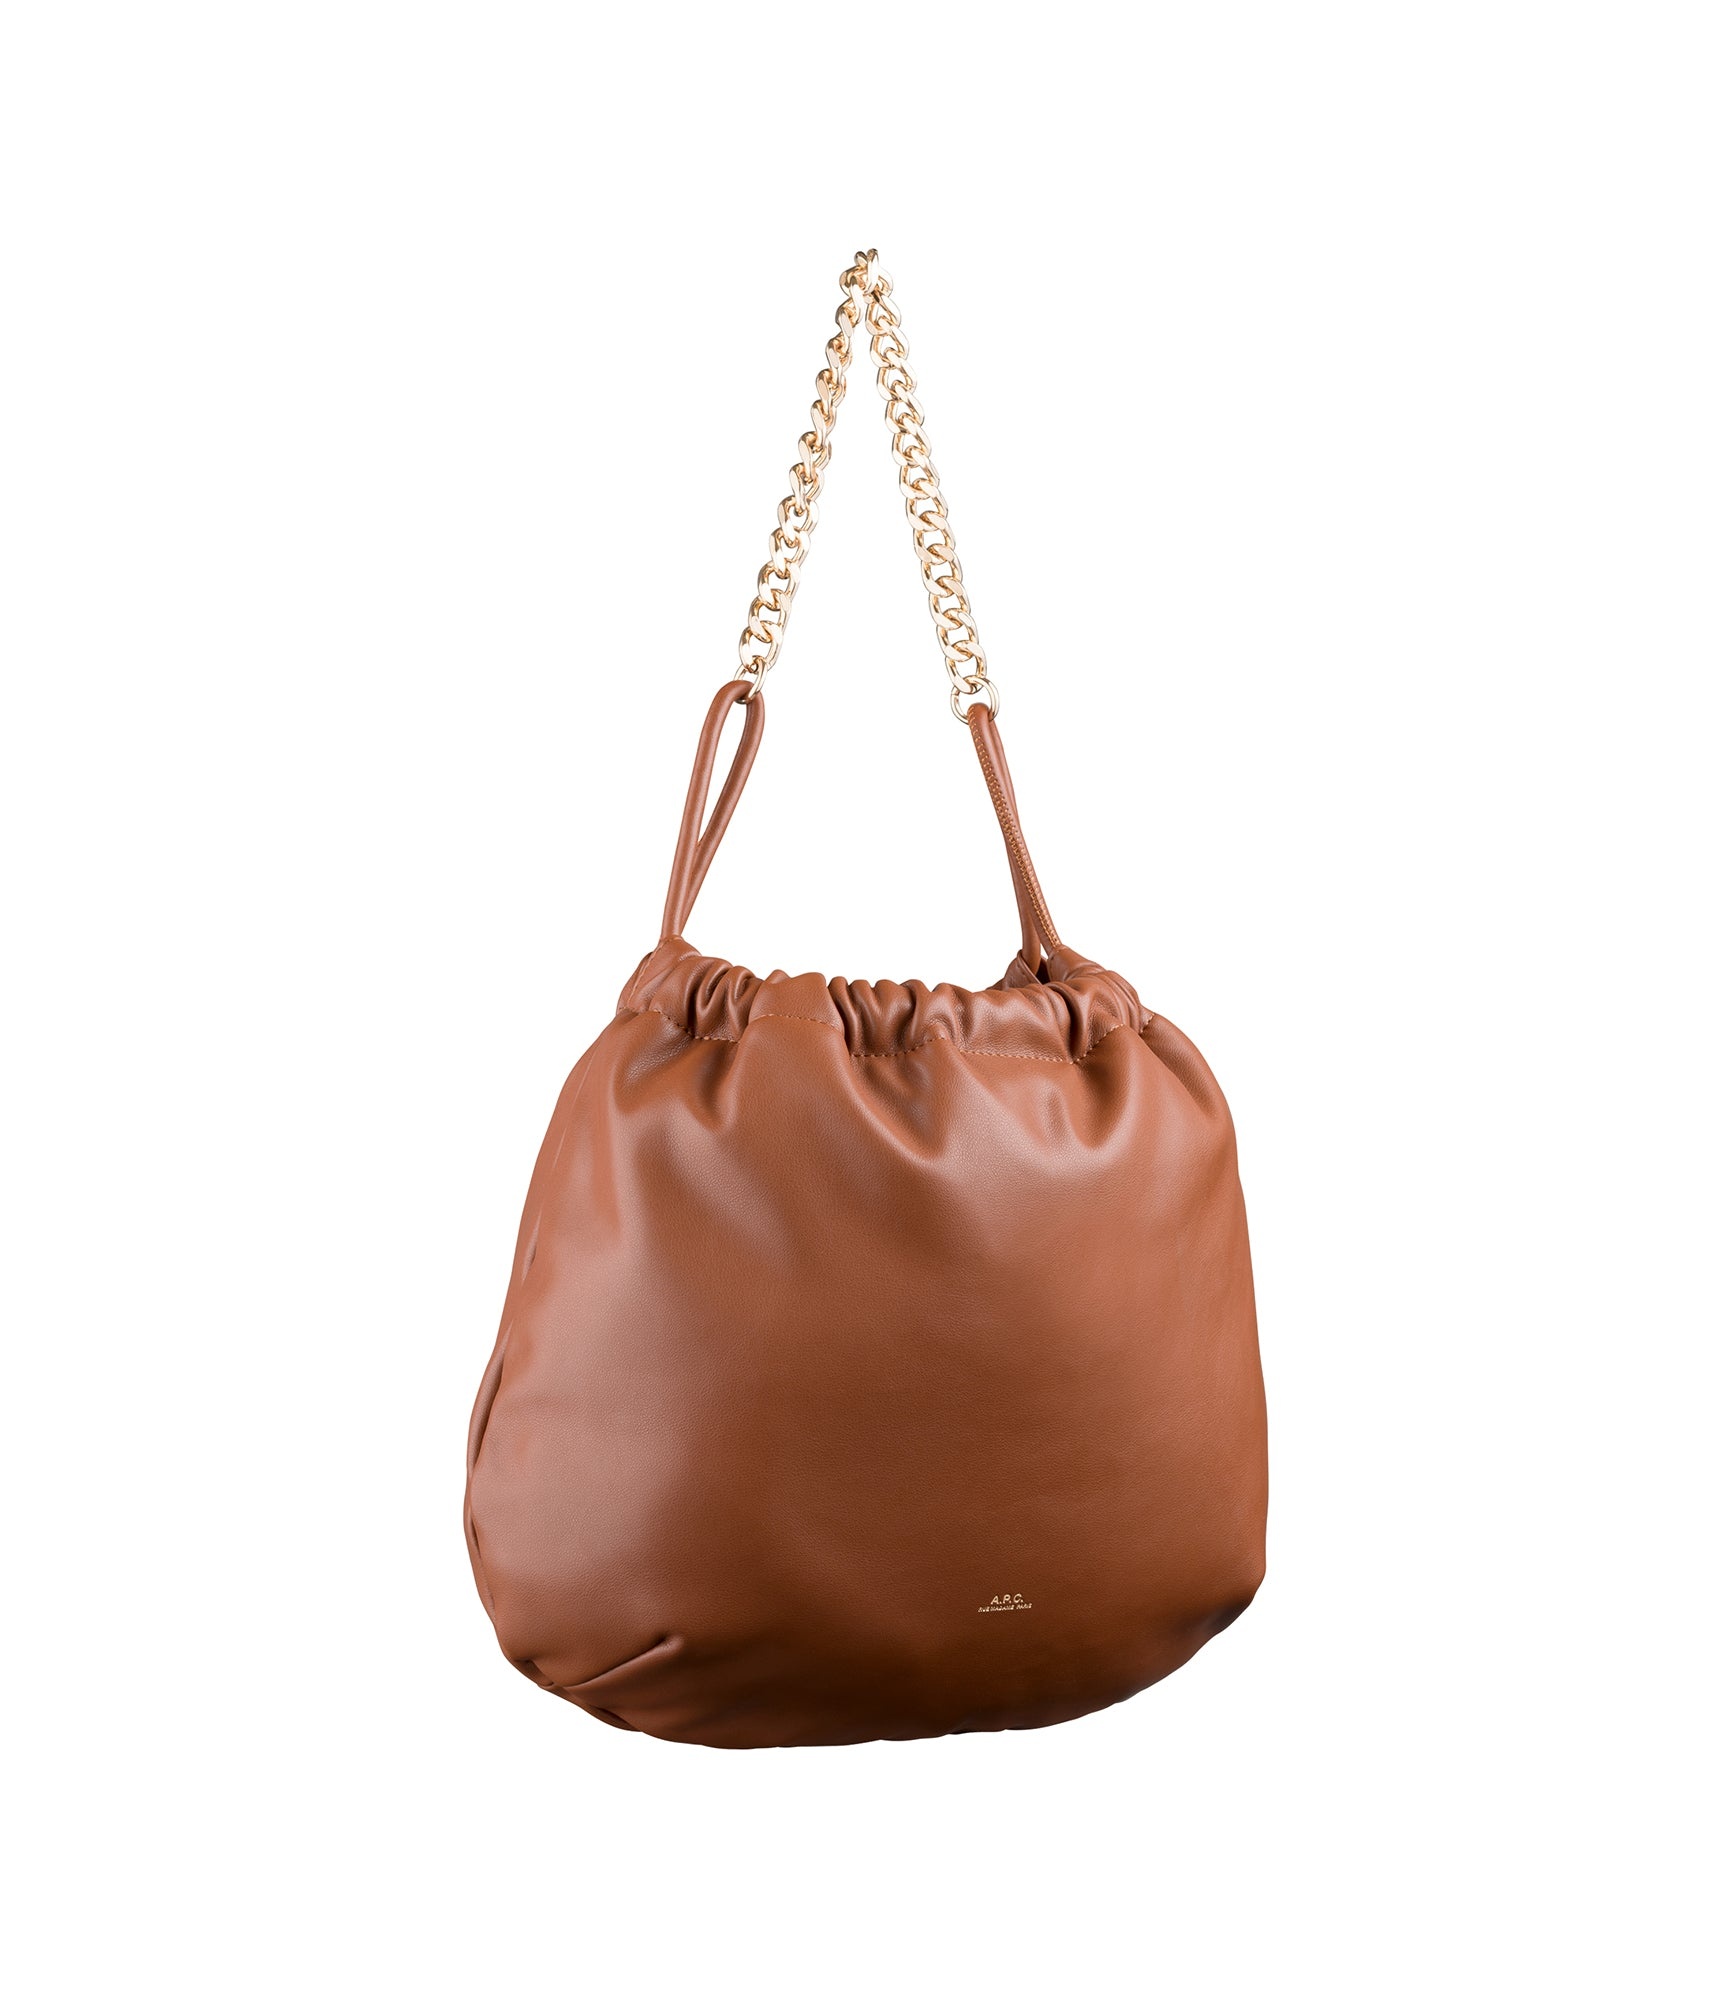 Ninon chain bag - 3